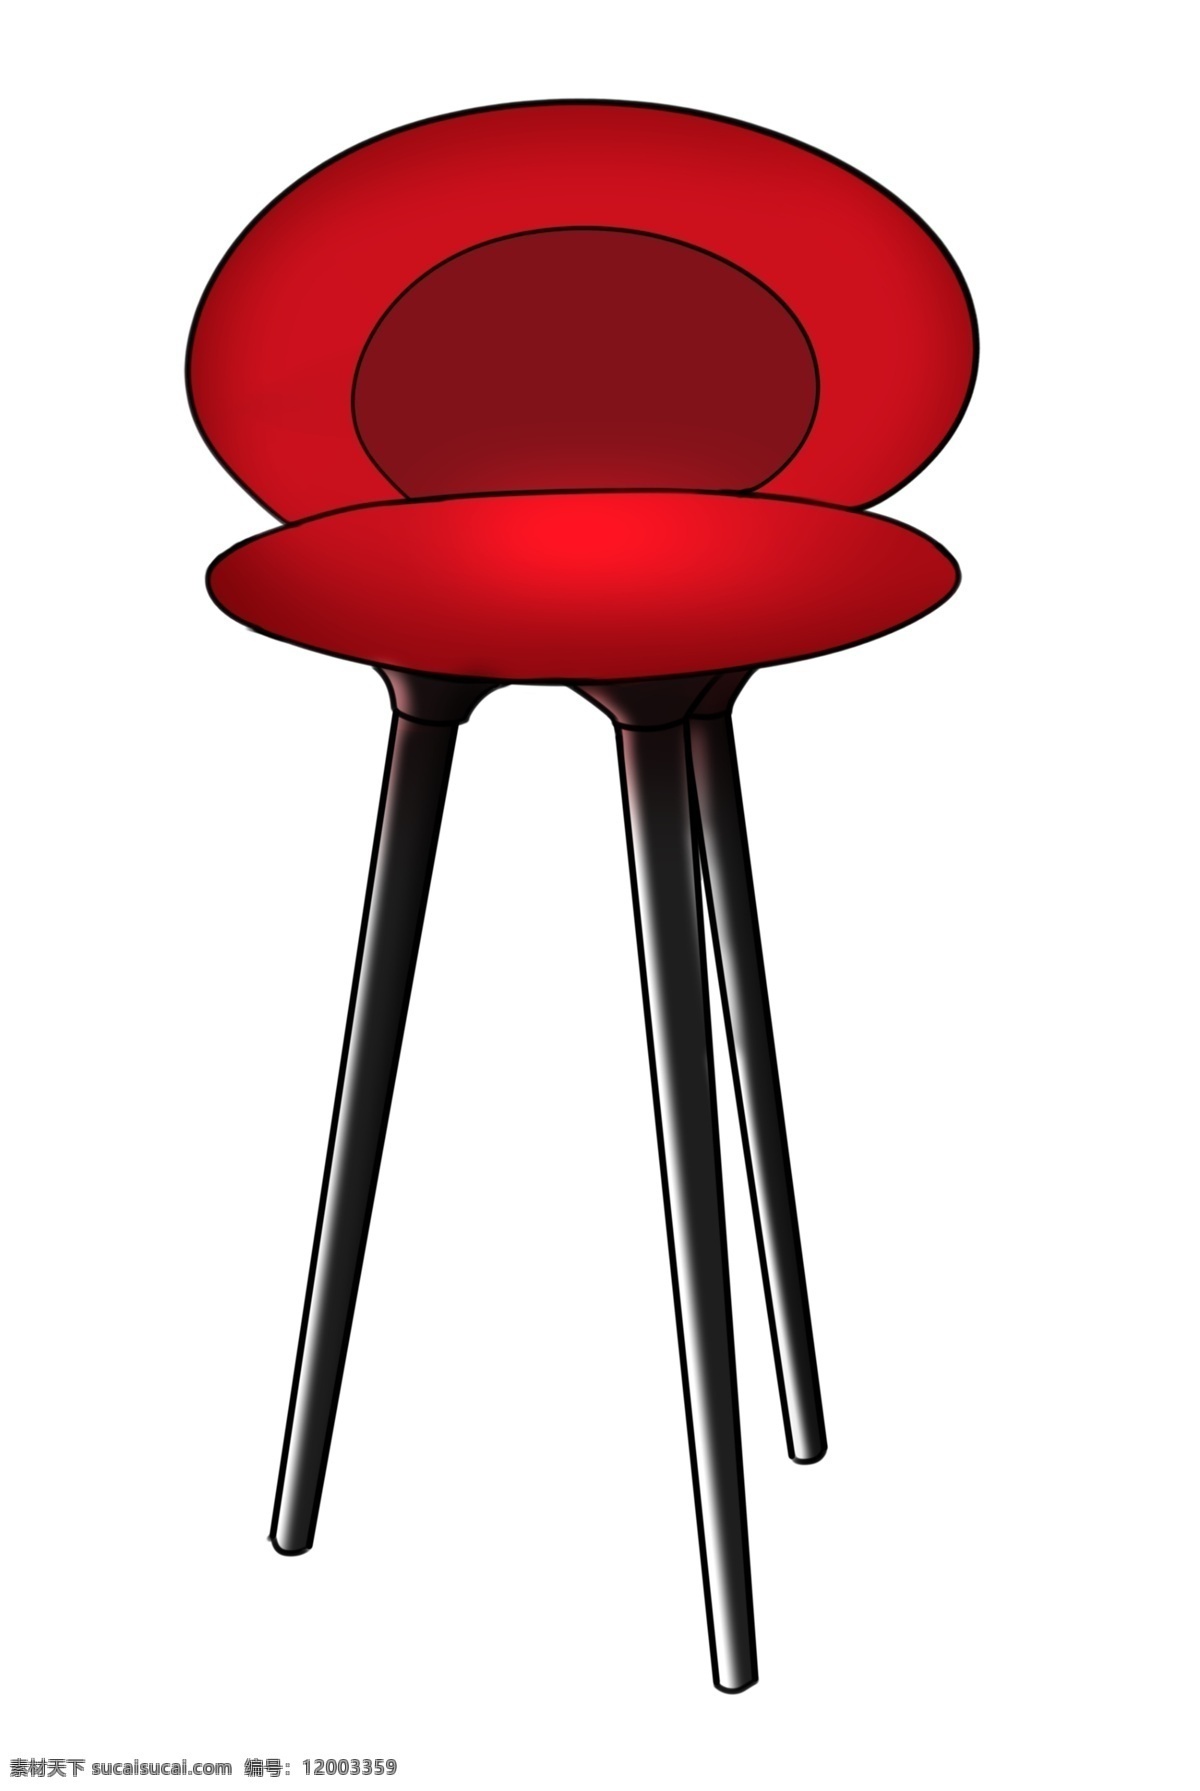 红色 高档 椅子 插画 高档的椅子 卡通插画 椅子插画 家具插画 漂亮家具 精美家具 红色的椅子